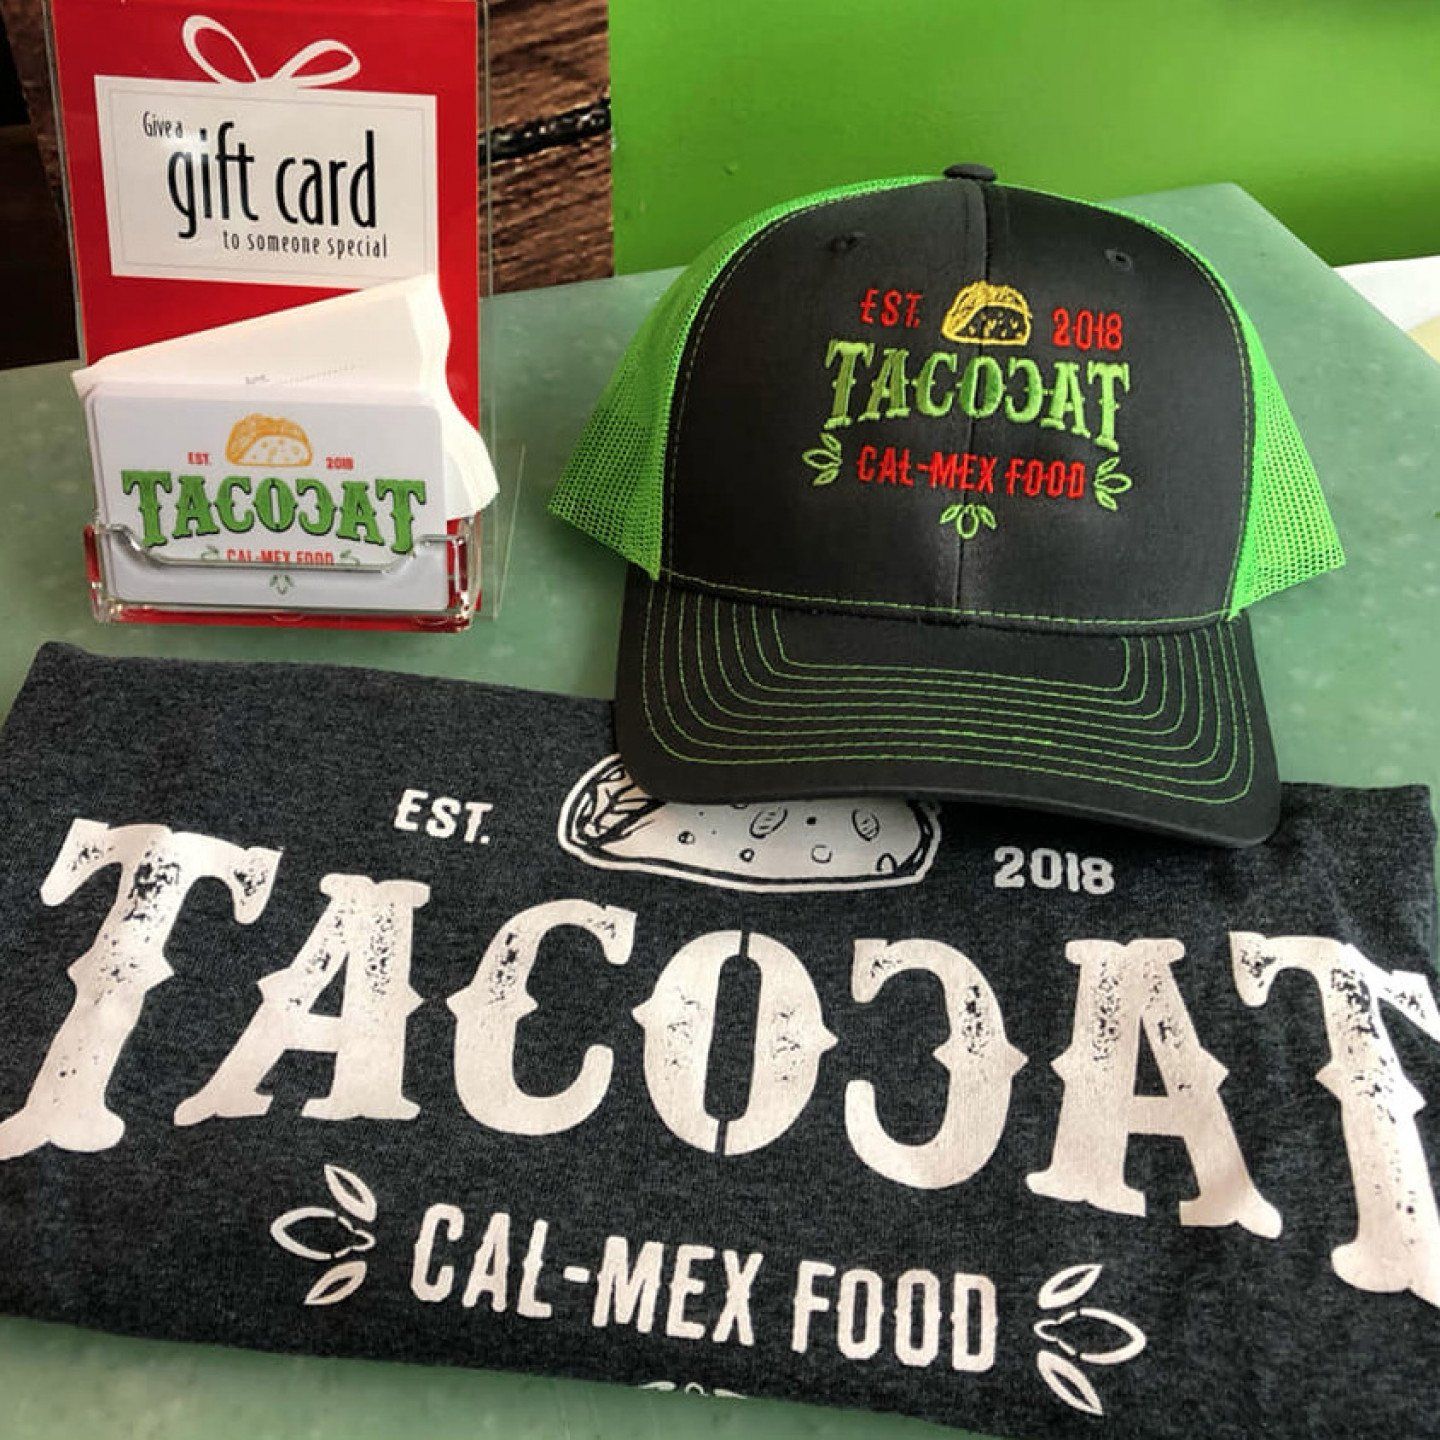 Tacocat's for sale merchandise